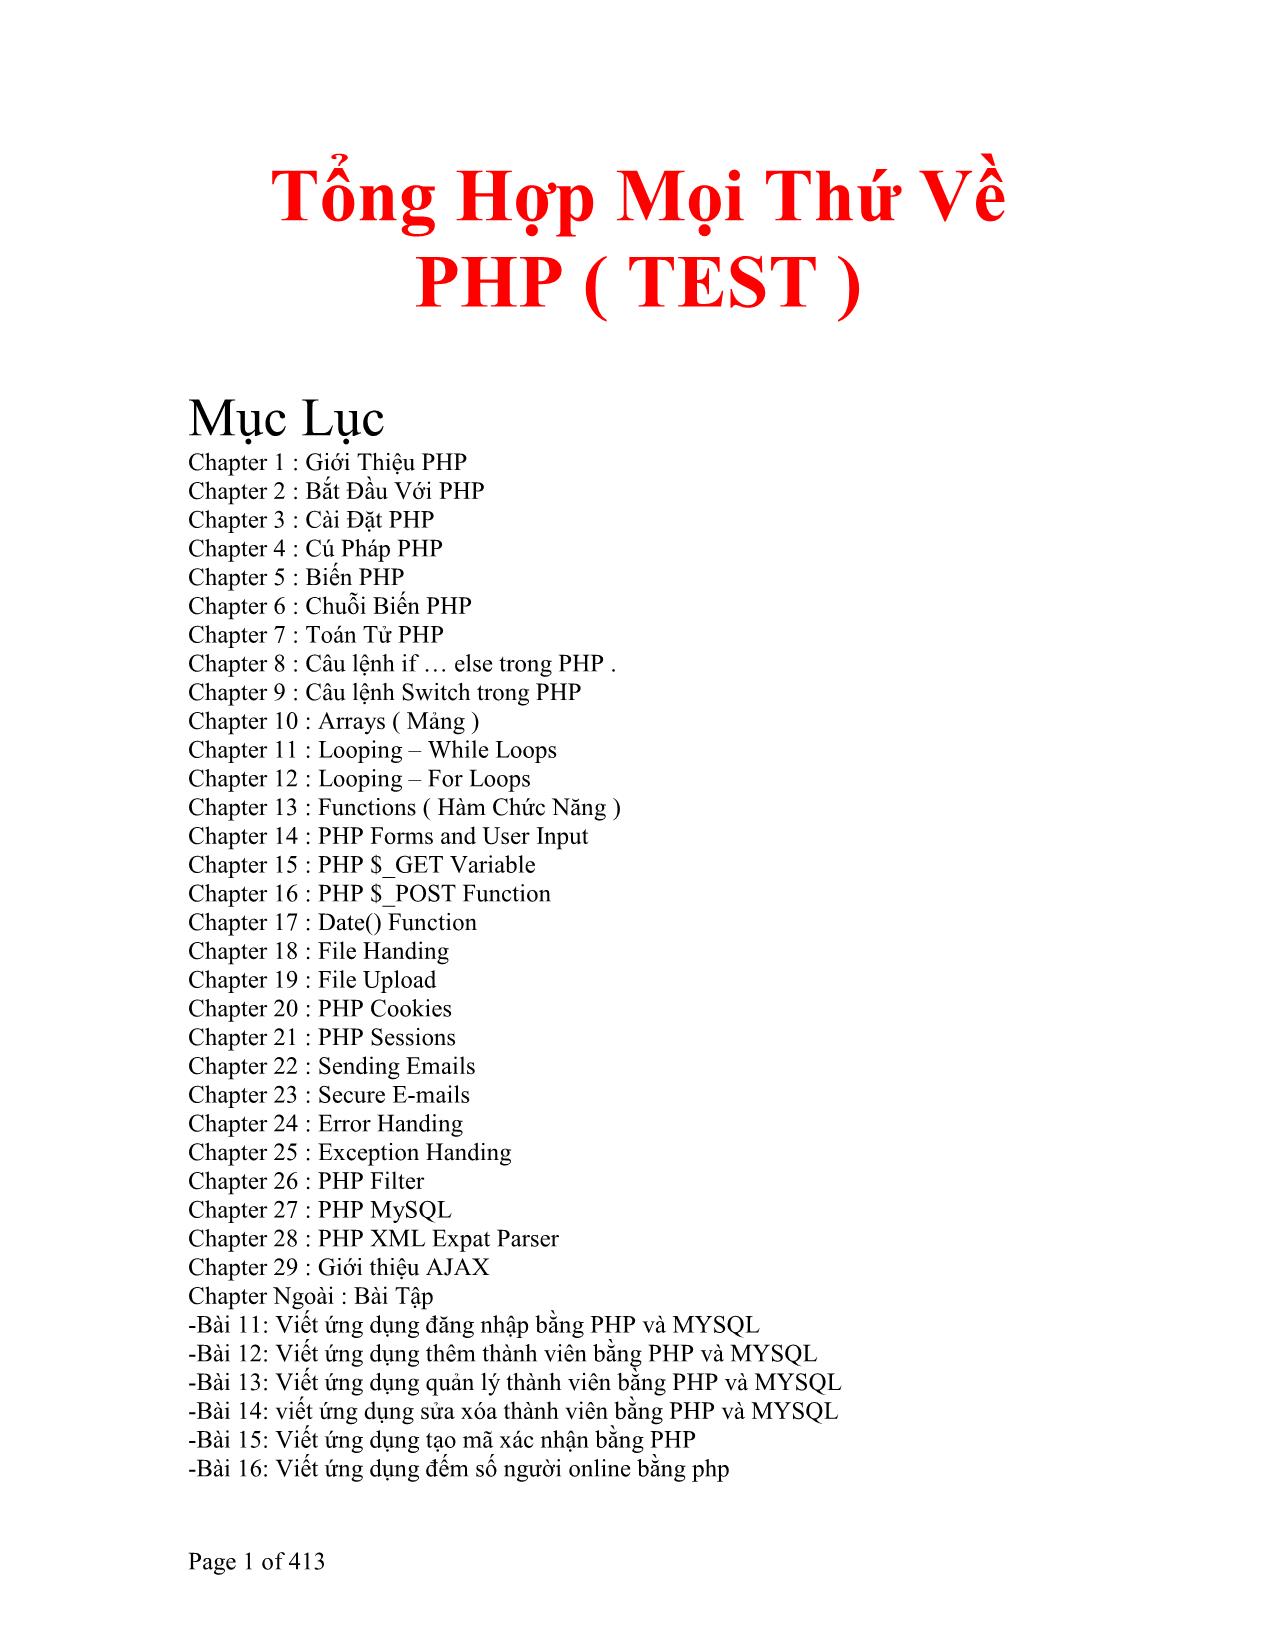 Tổng hợp về PHP trang 1